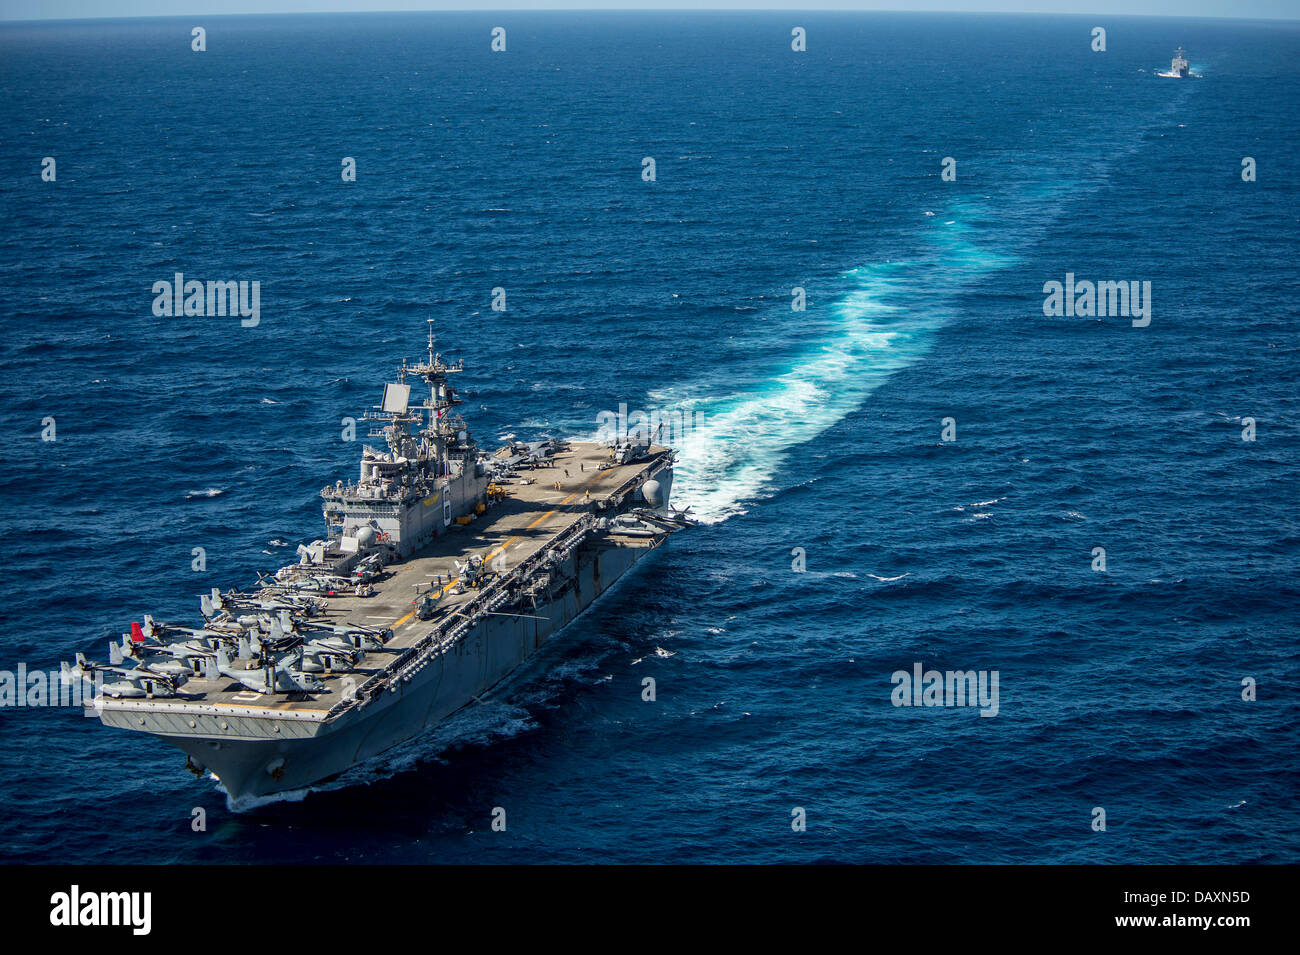 US Navy Amphibious Assault nave USS Bonhomme Richard durante l'esercizio talismano Saber Luglio 19, 2013 in mare di corallo. Talismano Saber è una formazione umanitaria esercizio tenuto con la Marina australiana. Foto Stock